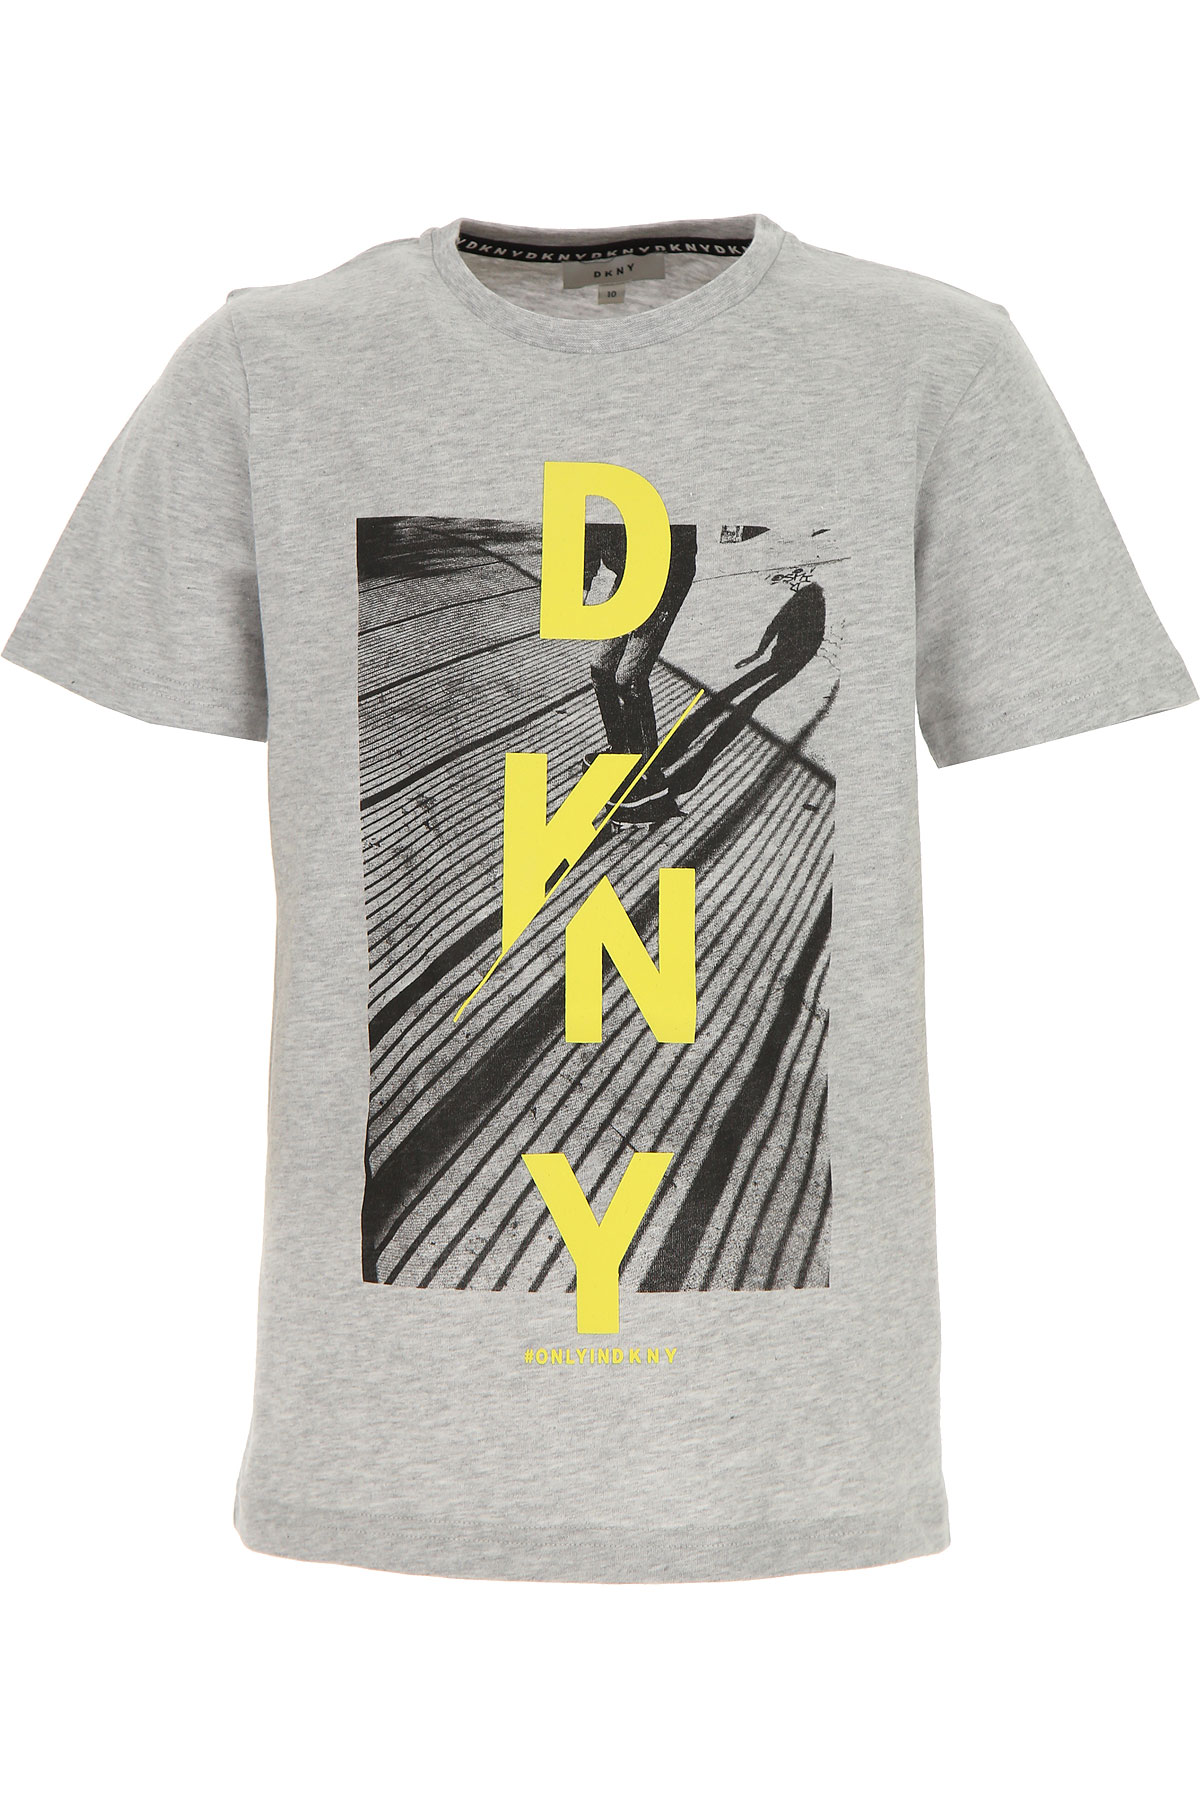 DKNY Kinder T-Shirt für Jungen Günstig im Outlet Sale, Grau, Baumwolle, 2017, 10Y 6Y